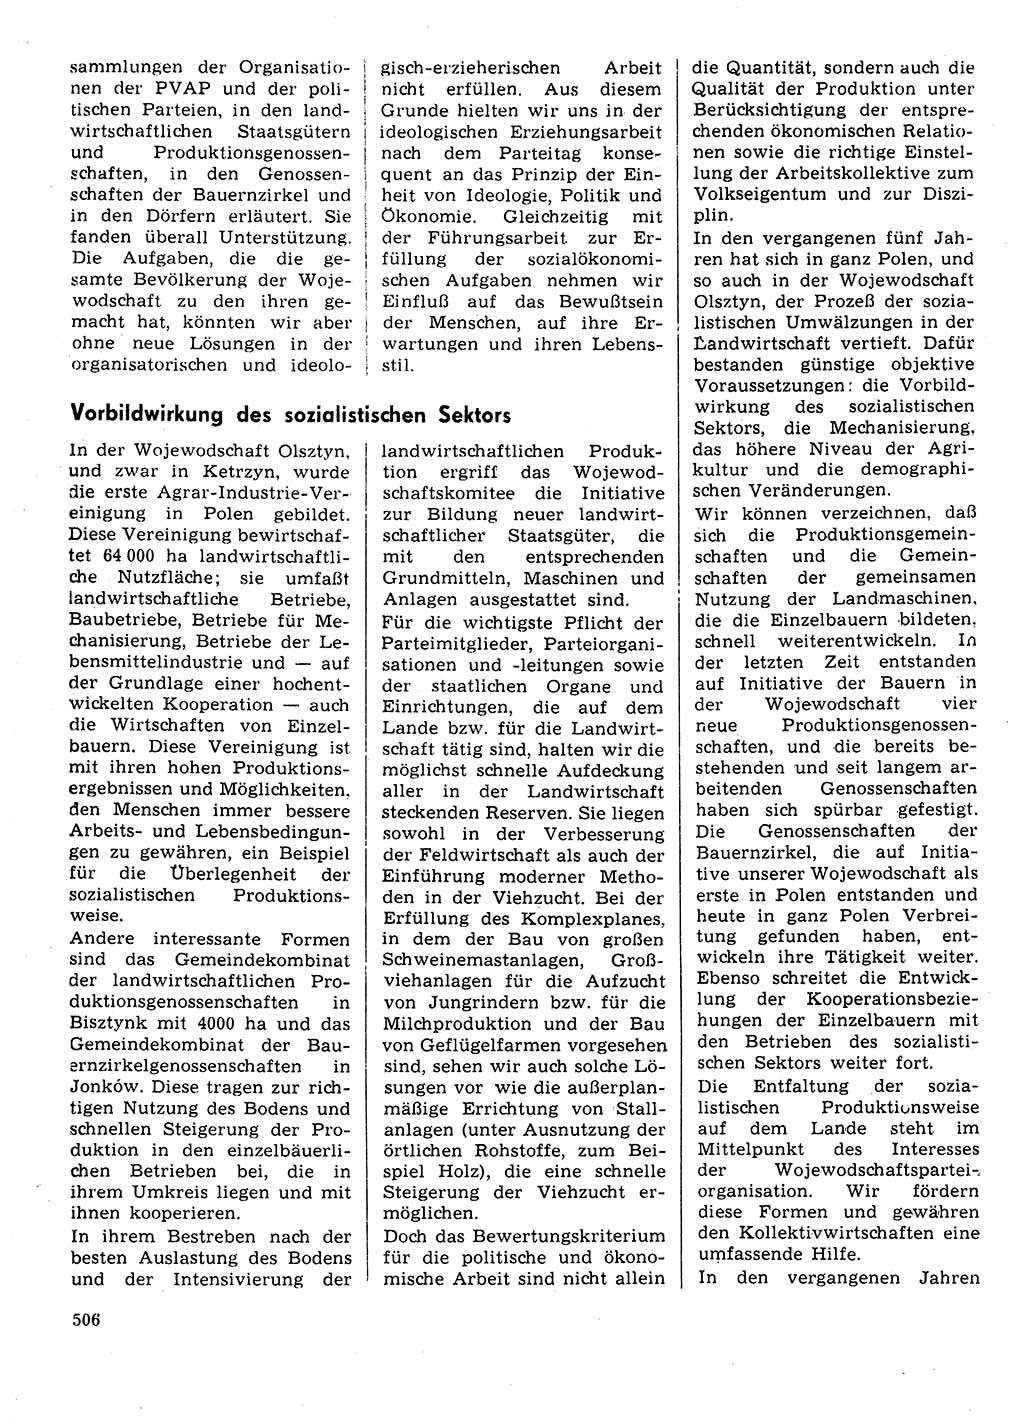 Neuer Weg (NW), Organ des Zentralkomitees (ZK) der SED (Sozialistische Einheitspartei Deutschlands) für Fragen des Parteilebens, 31. Jahrgang [Deutsche Demokratische Republik (DDR)] 1976, Seite 506 (NW ZK SED DDR 1976, S. 506)